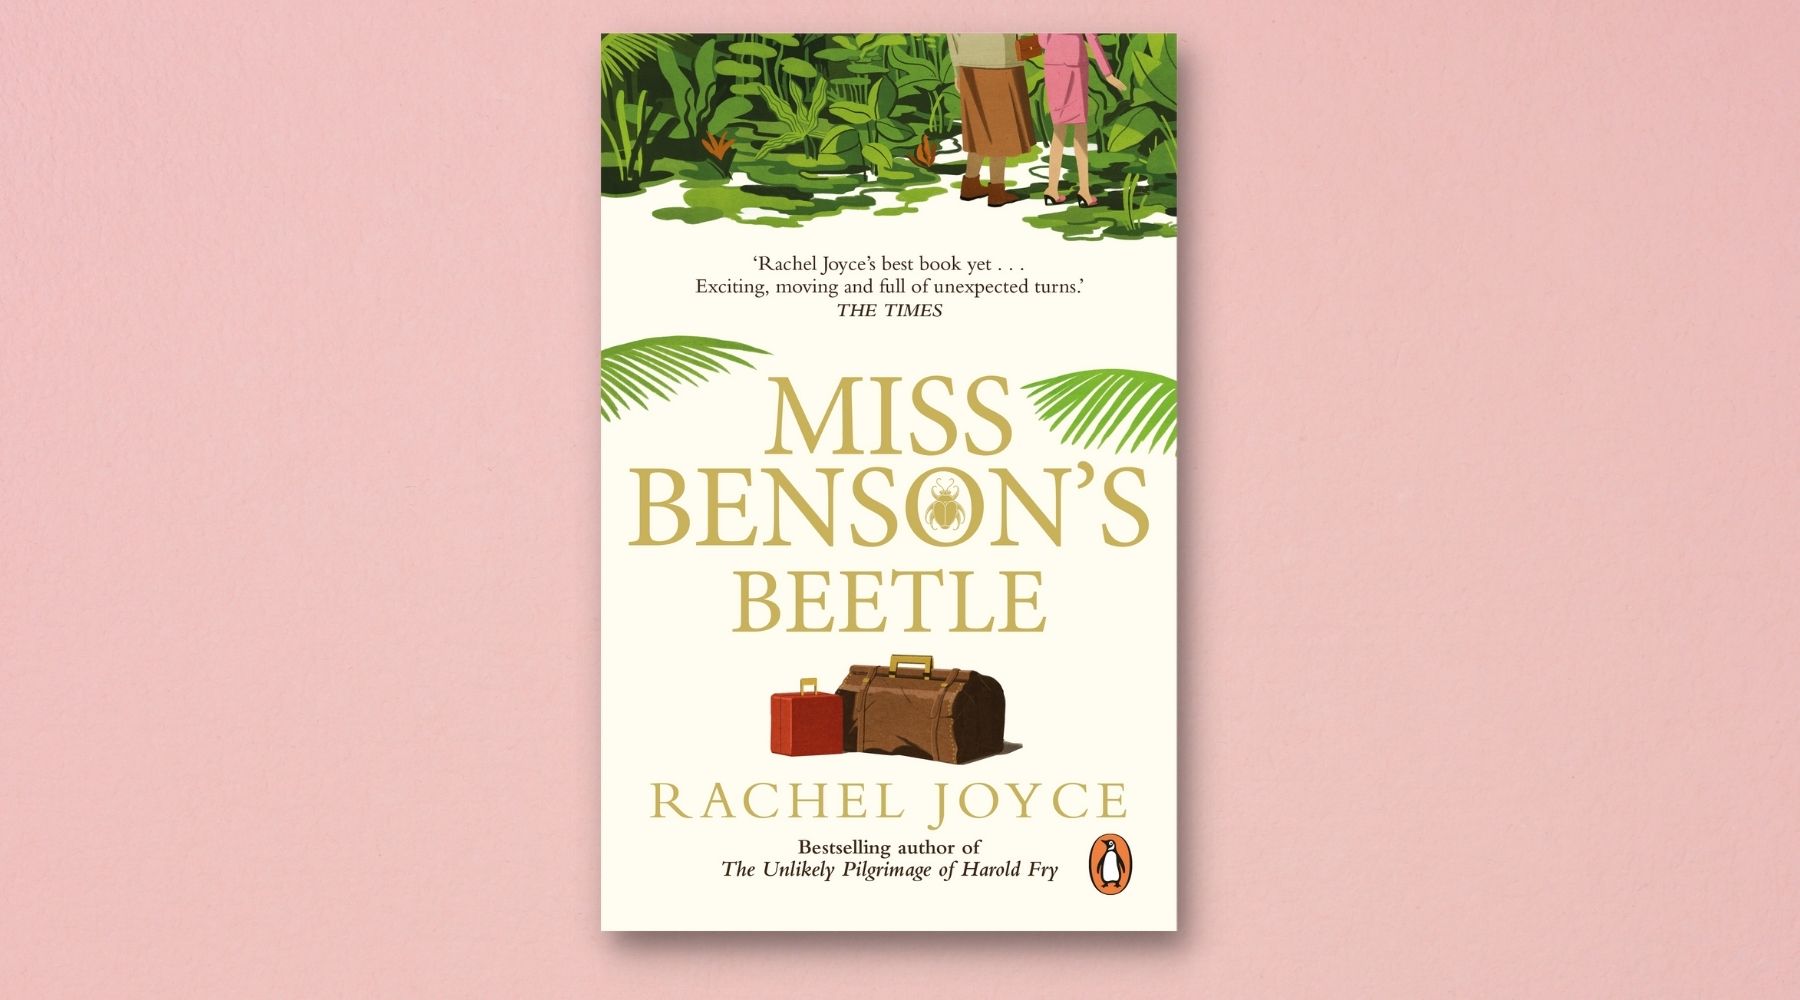 Miss Benson’s Beetle by Rachel Joyce